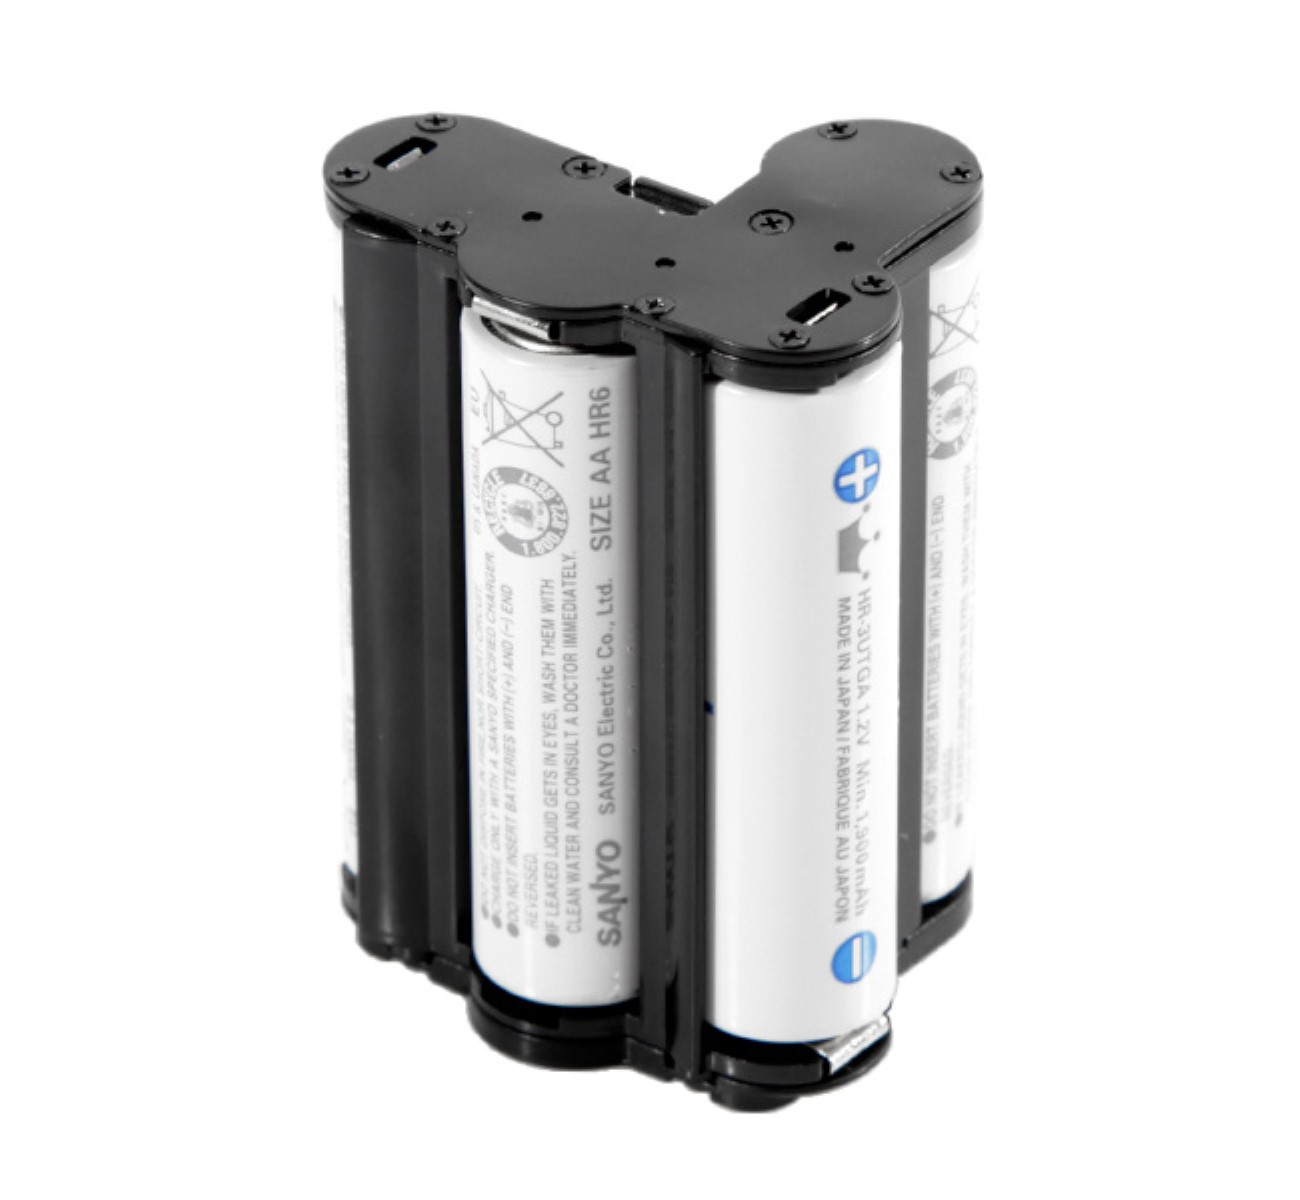 Battery Holder, Batteriehalter für Pentax K-S2, K-S1, K-500, K-50, K-30, K-R